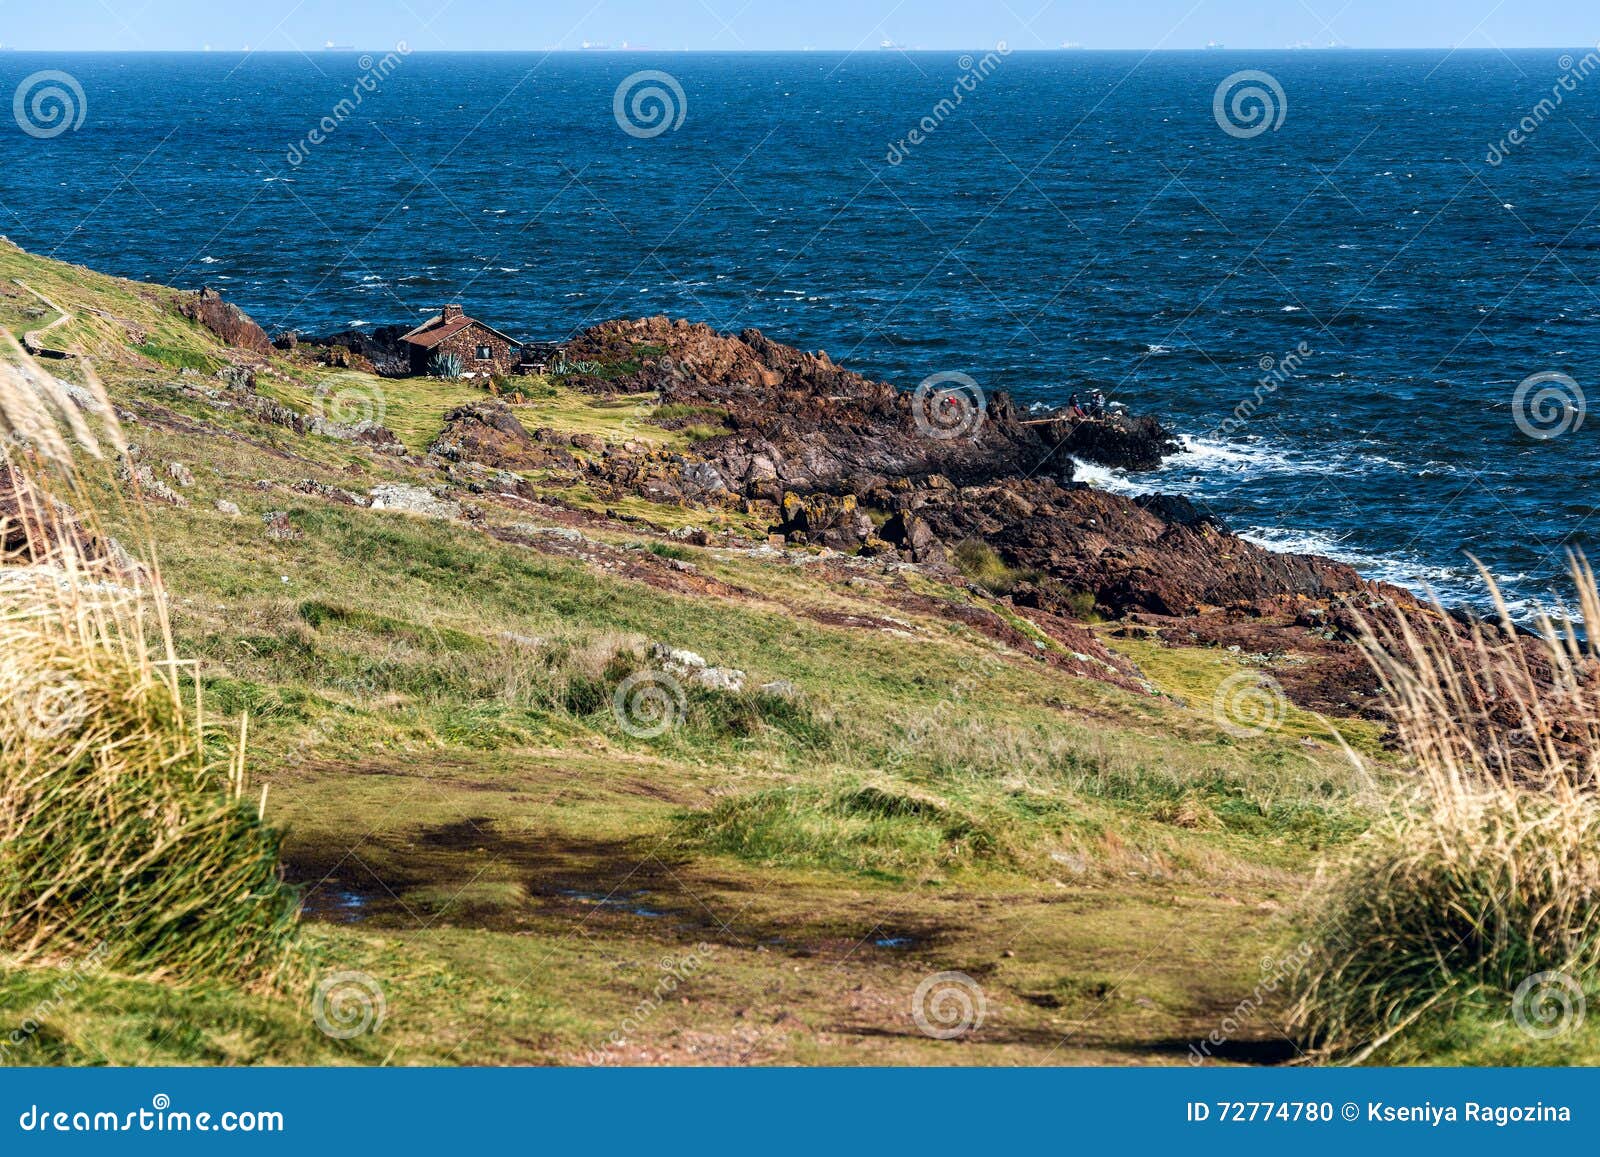 punta ballena seaside in punta del este, uruguay